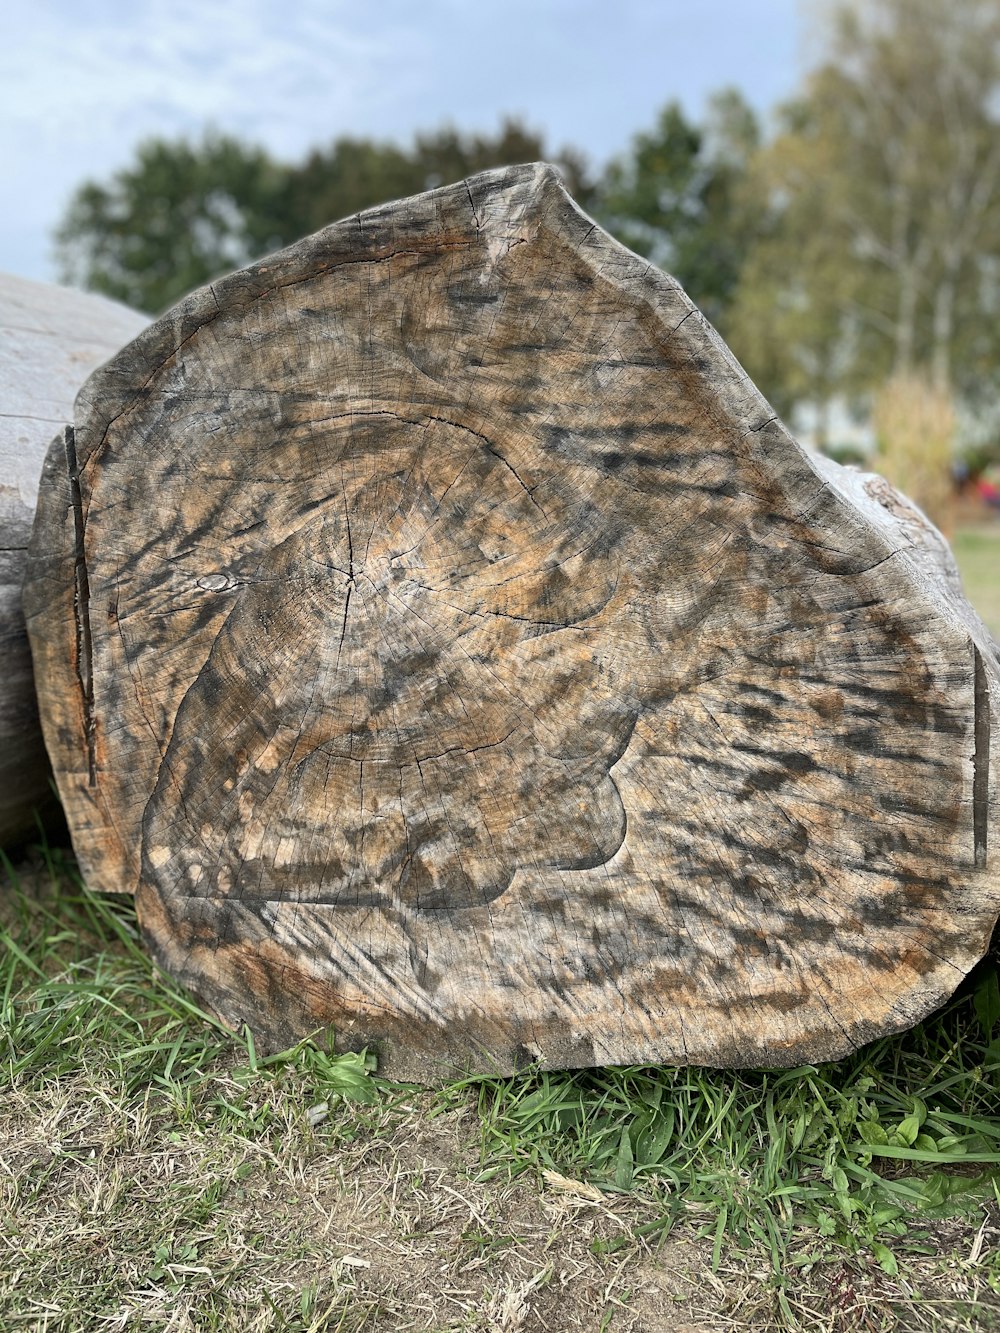 a tree stump in a field